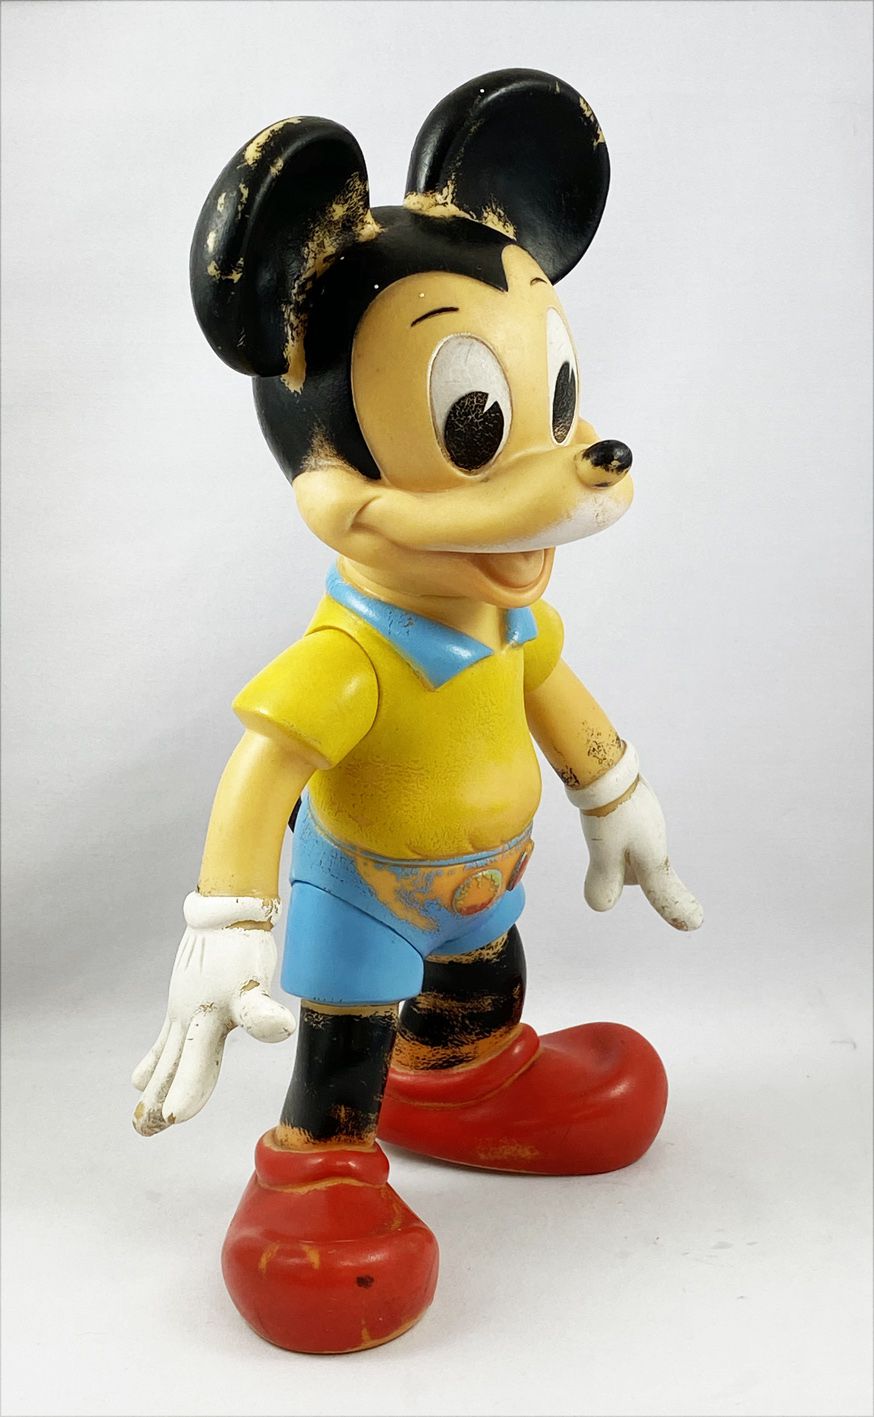 Pinocchio (Disney) - Pouet Ledra 39cm - Pinocchio